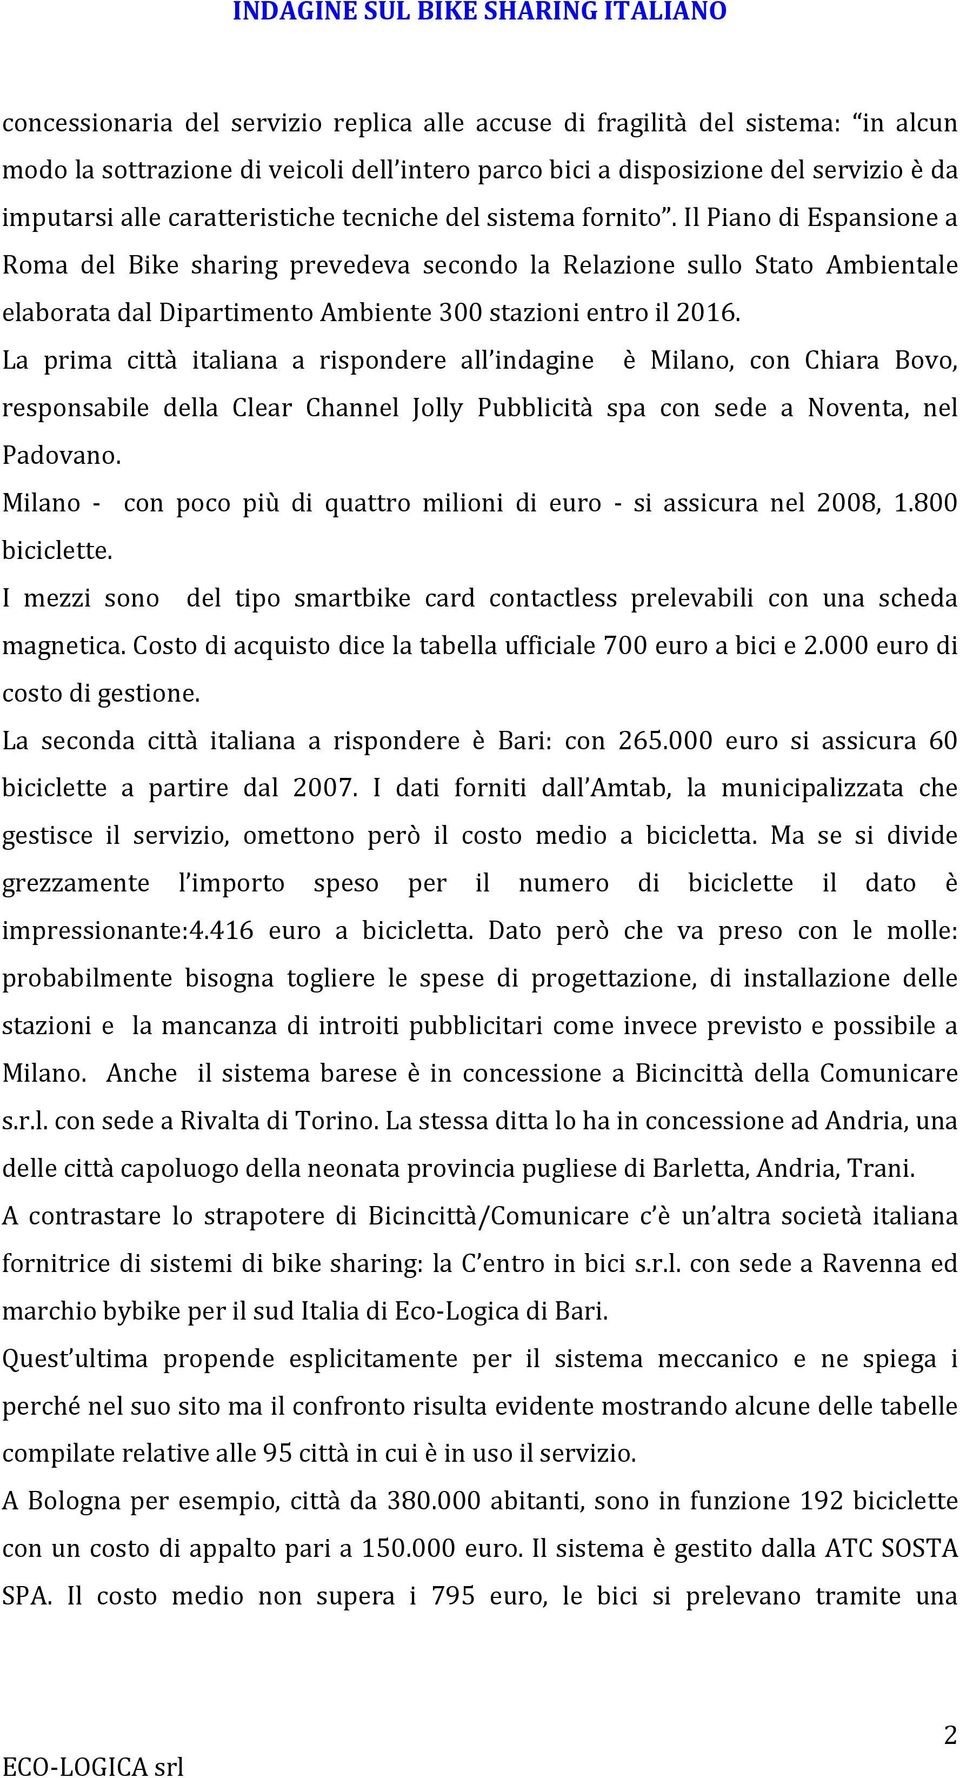 Il Piano di Espansione a Roma del Bike sharing prevedeva secondo la Relazione sullo Stato Ambientale elaborata dal Dipartimento Ambiente 300 stazioni entro il 2016.